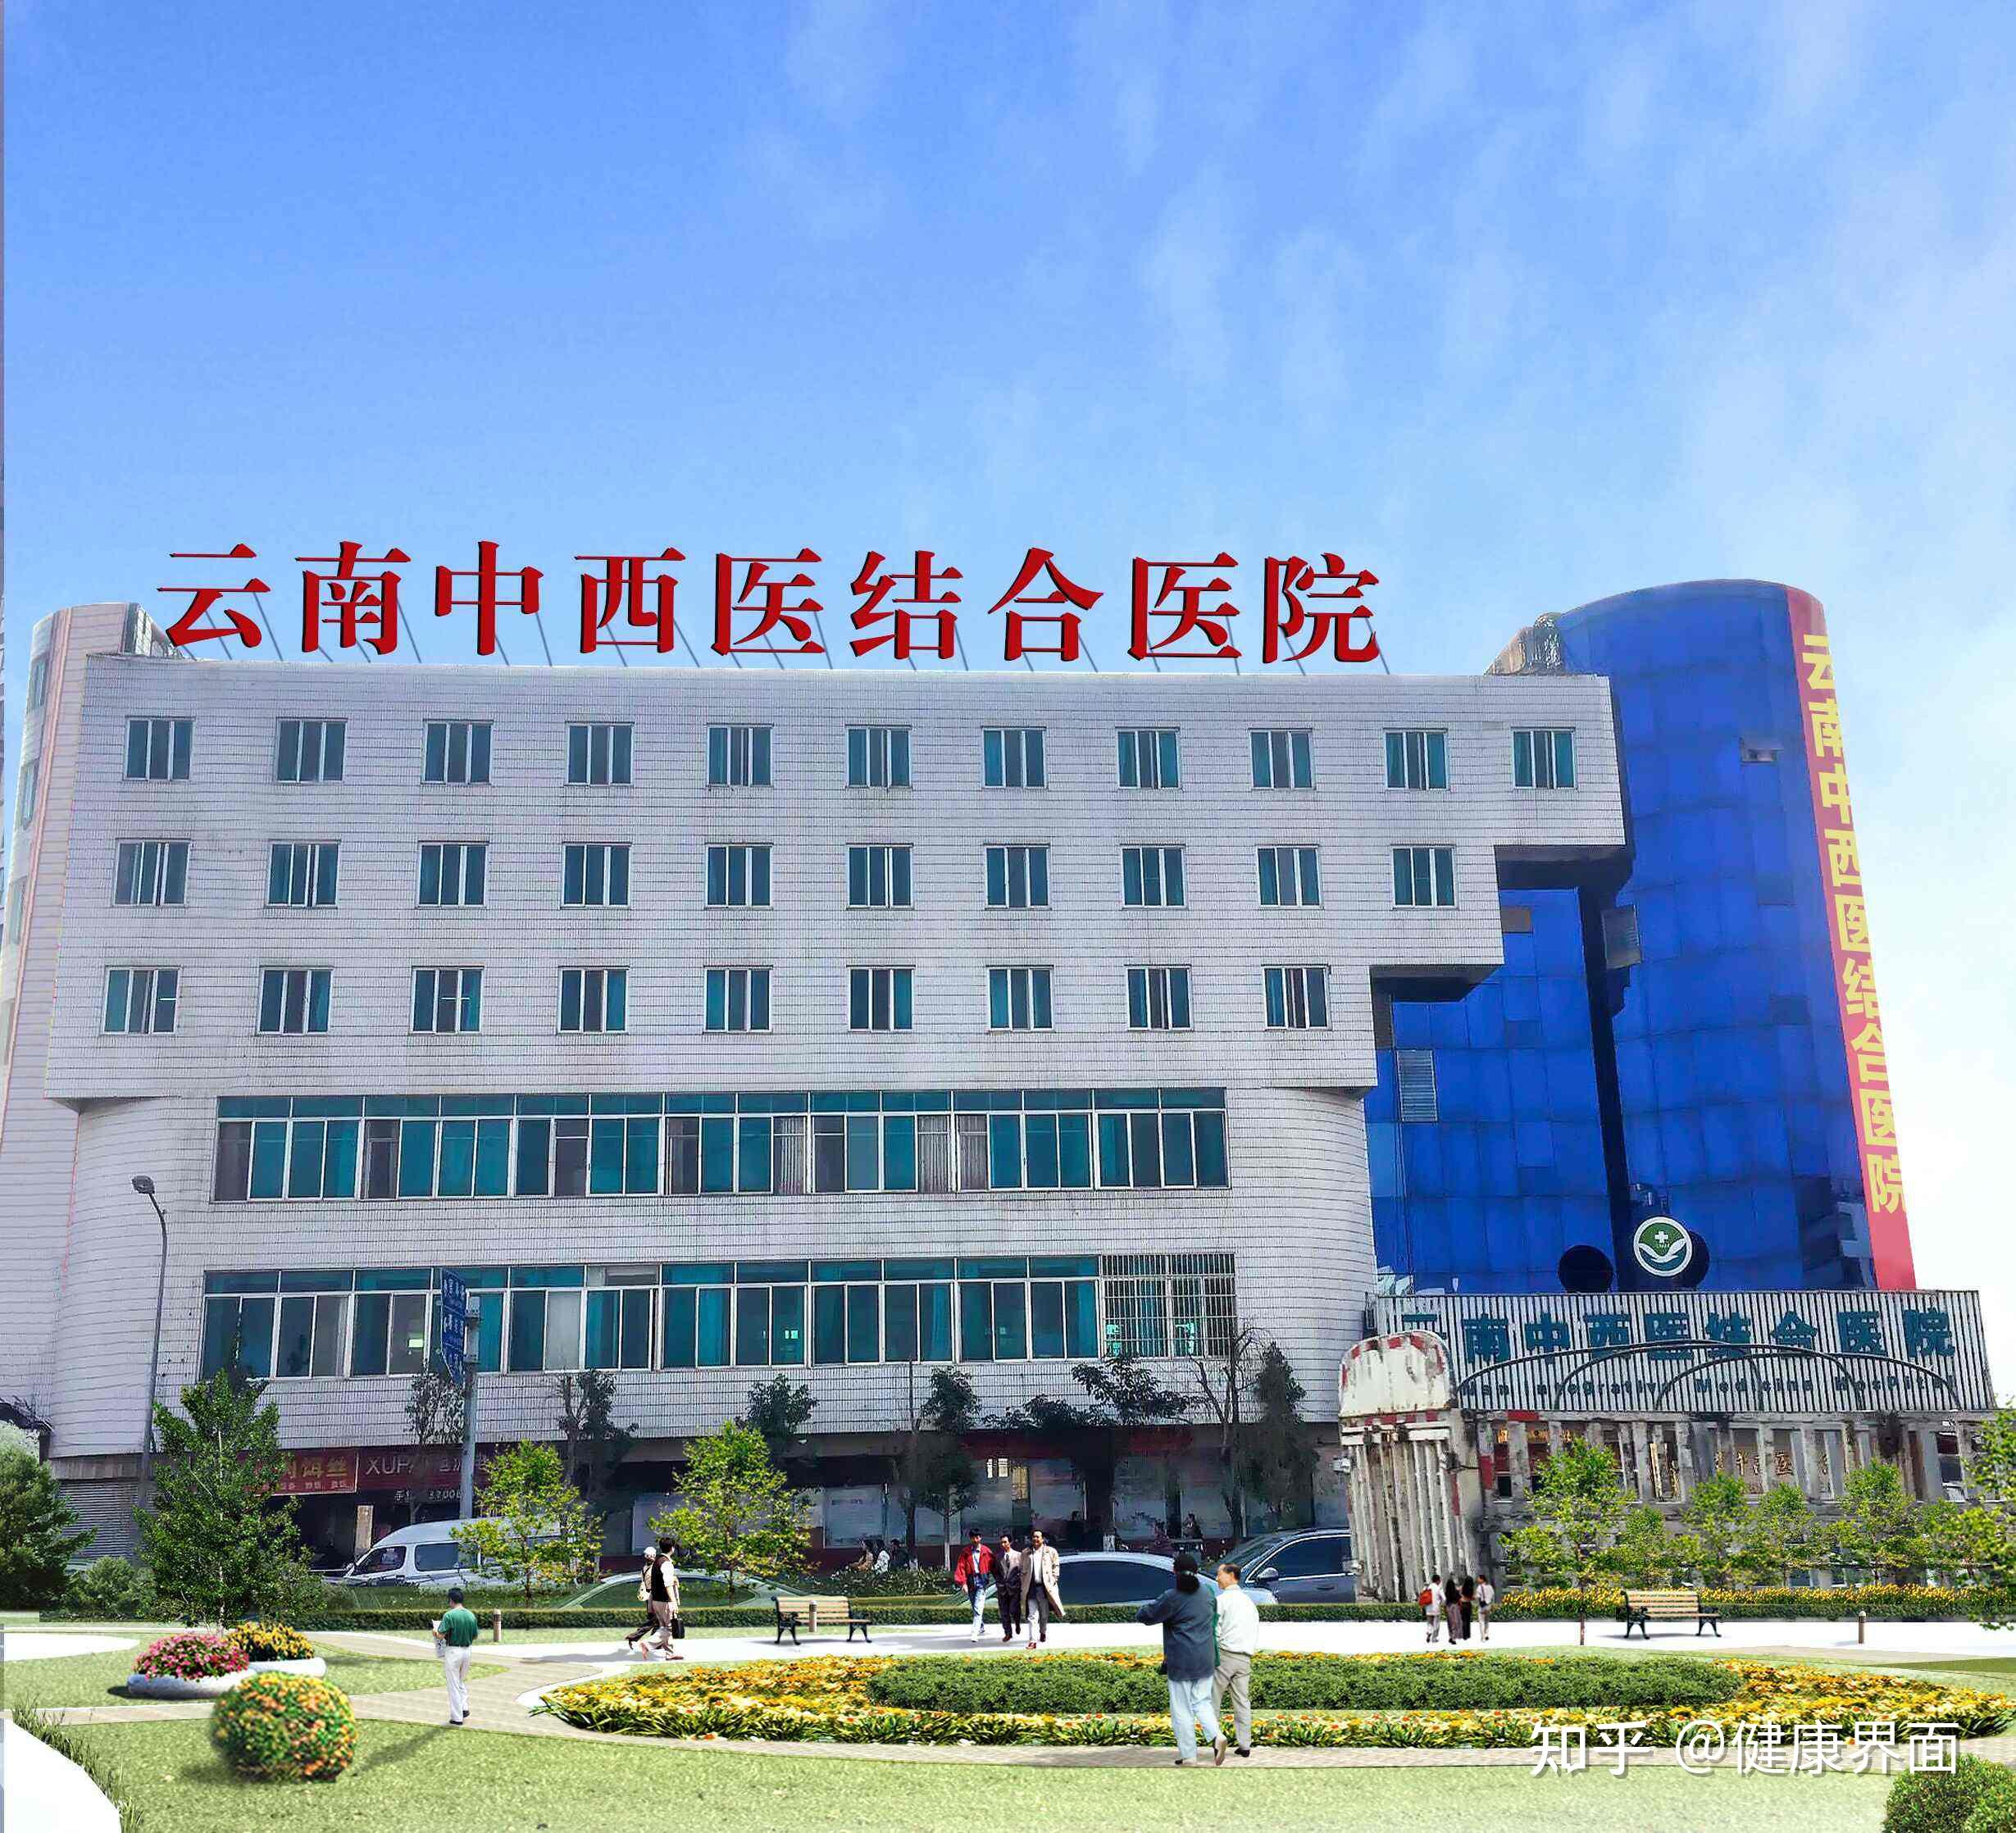 唐山市人民医院第一分院 唐山市人民医院医疗集团 -唐山市人民医院